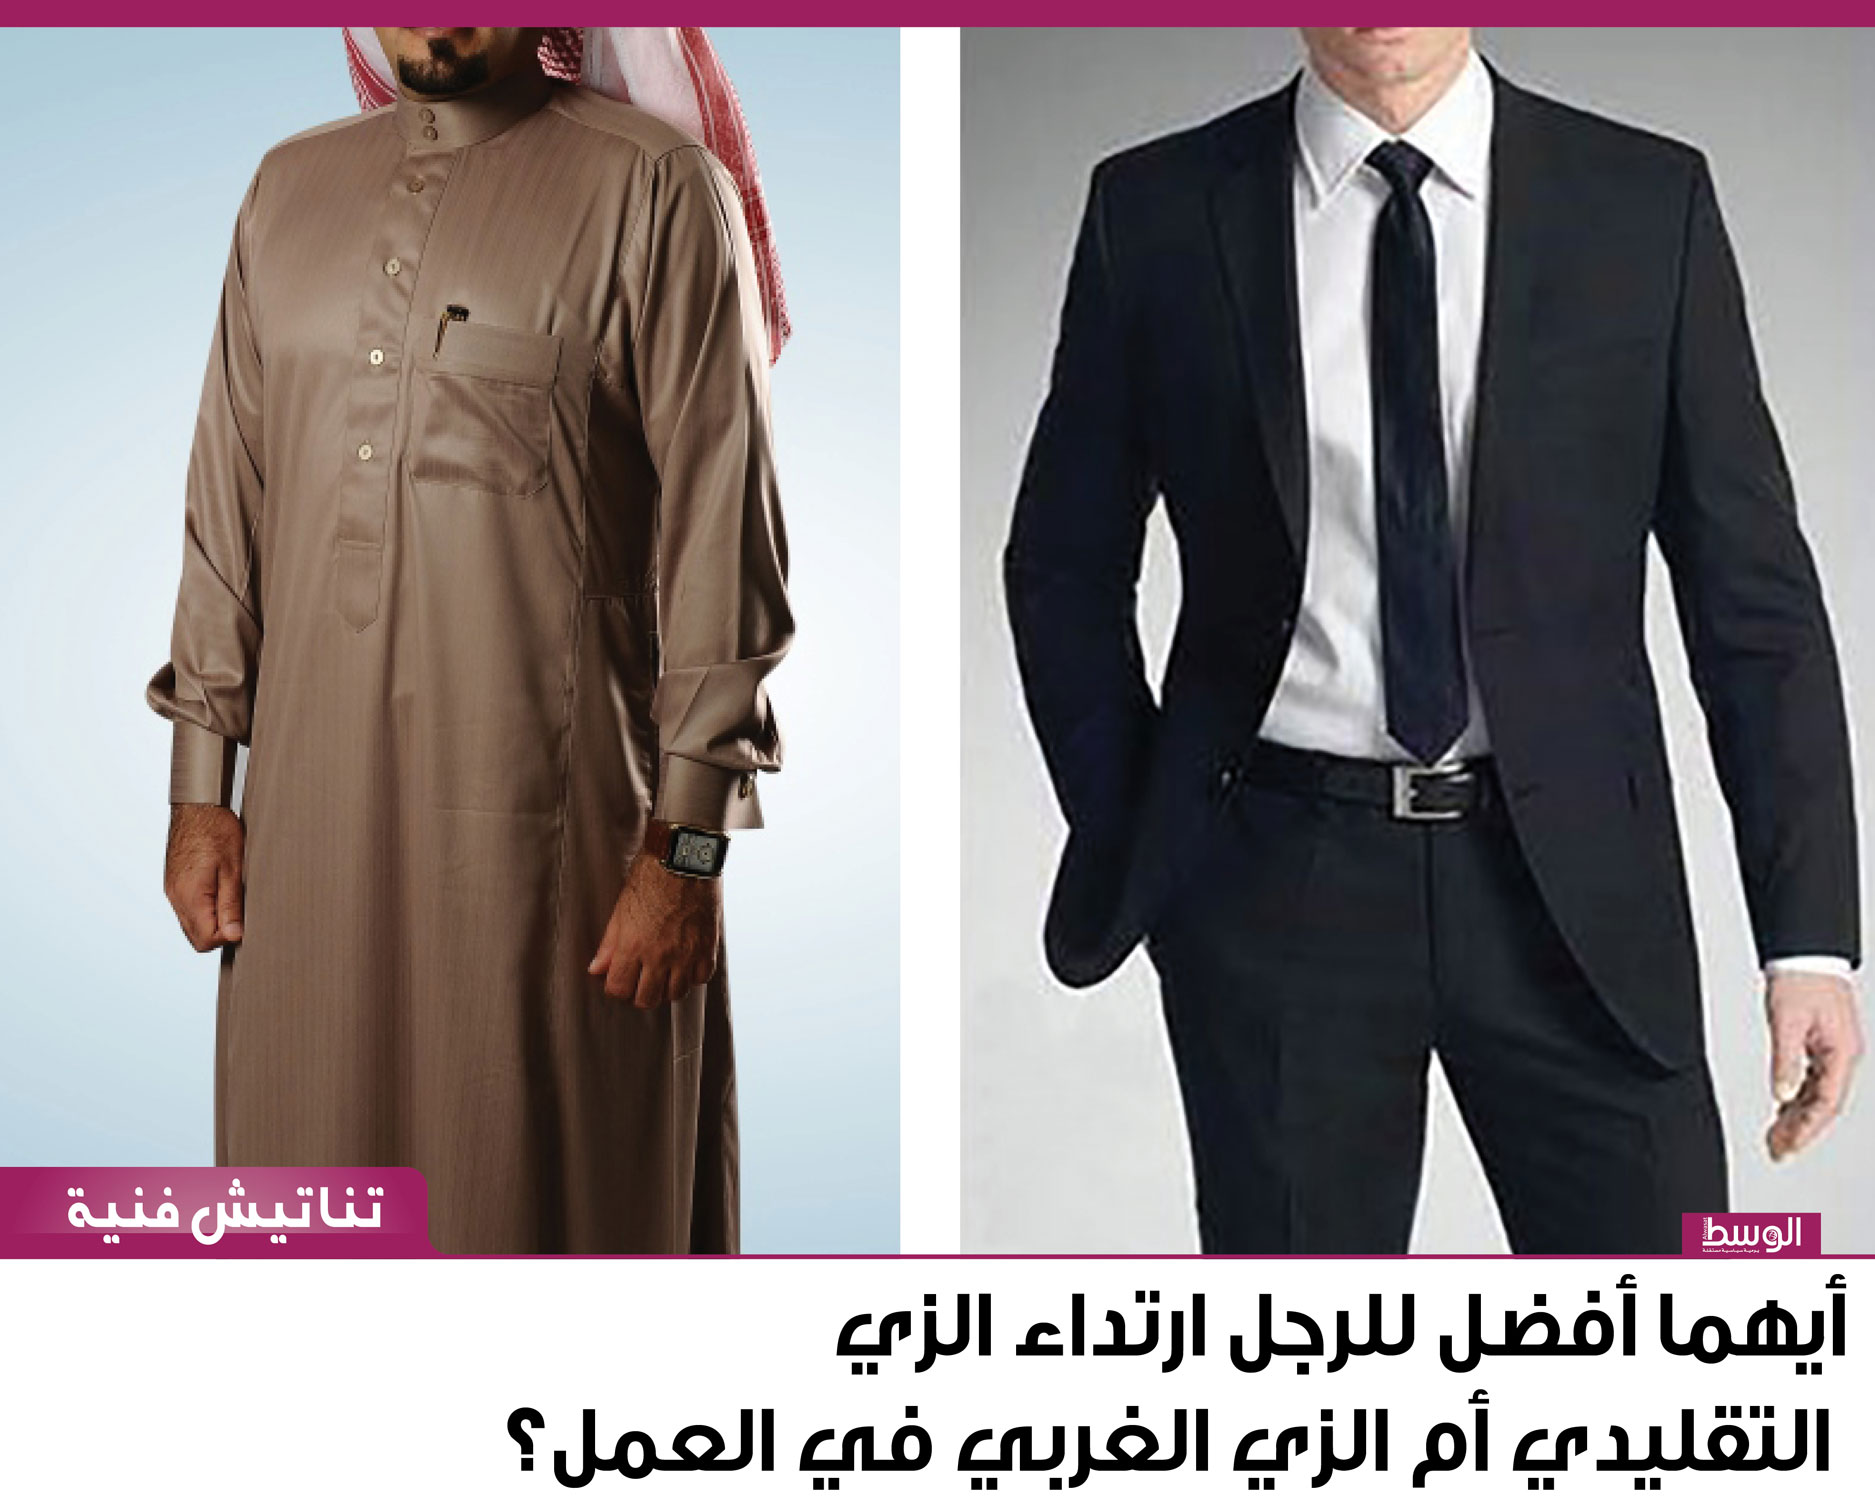 أيهما أفضل للرجل أن يلبس الثوب التقليدي أم الزي الغربي في العمل؟